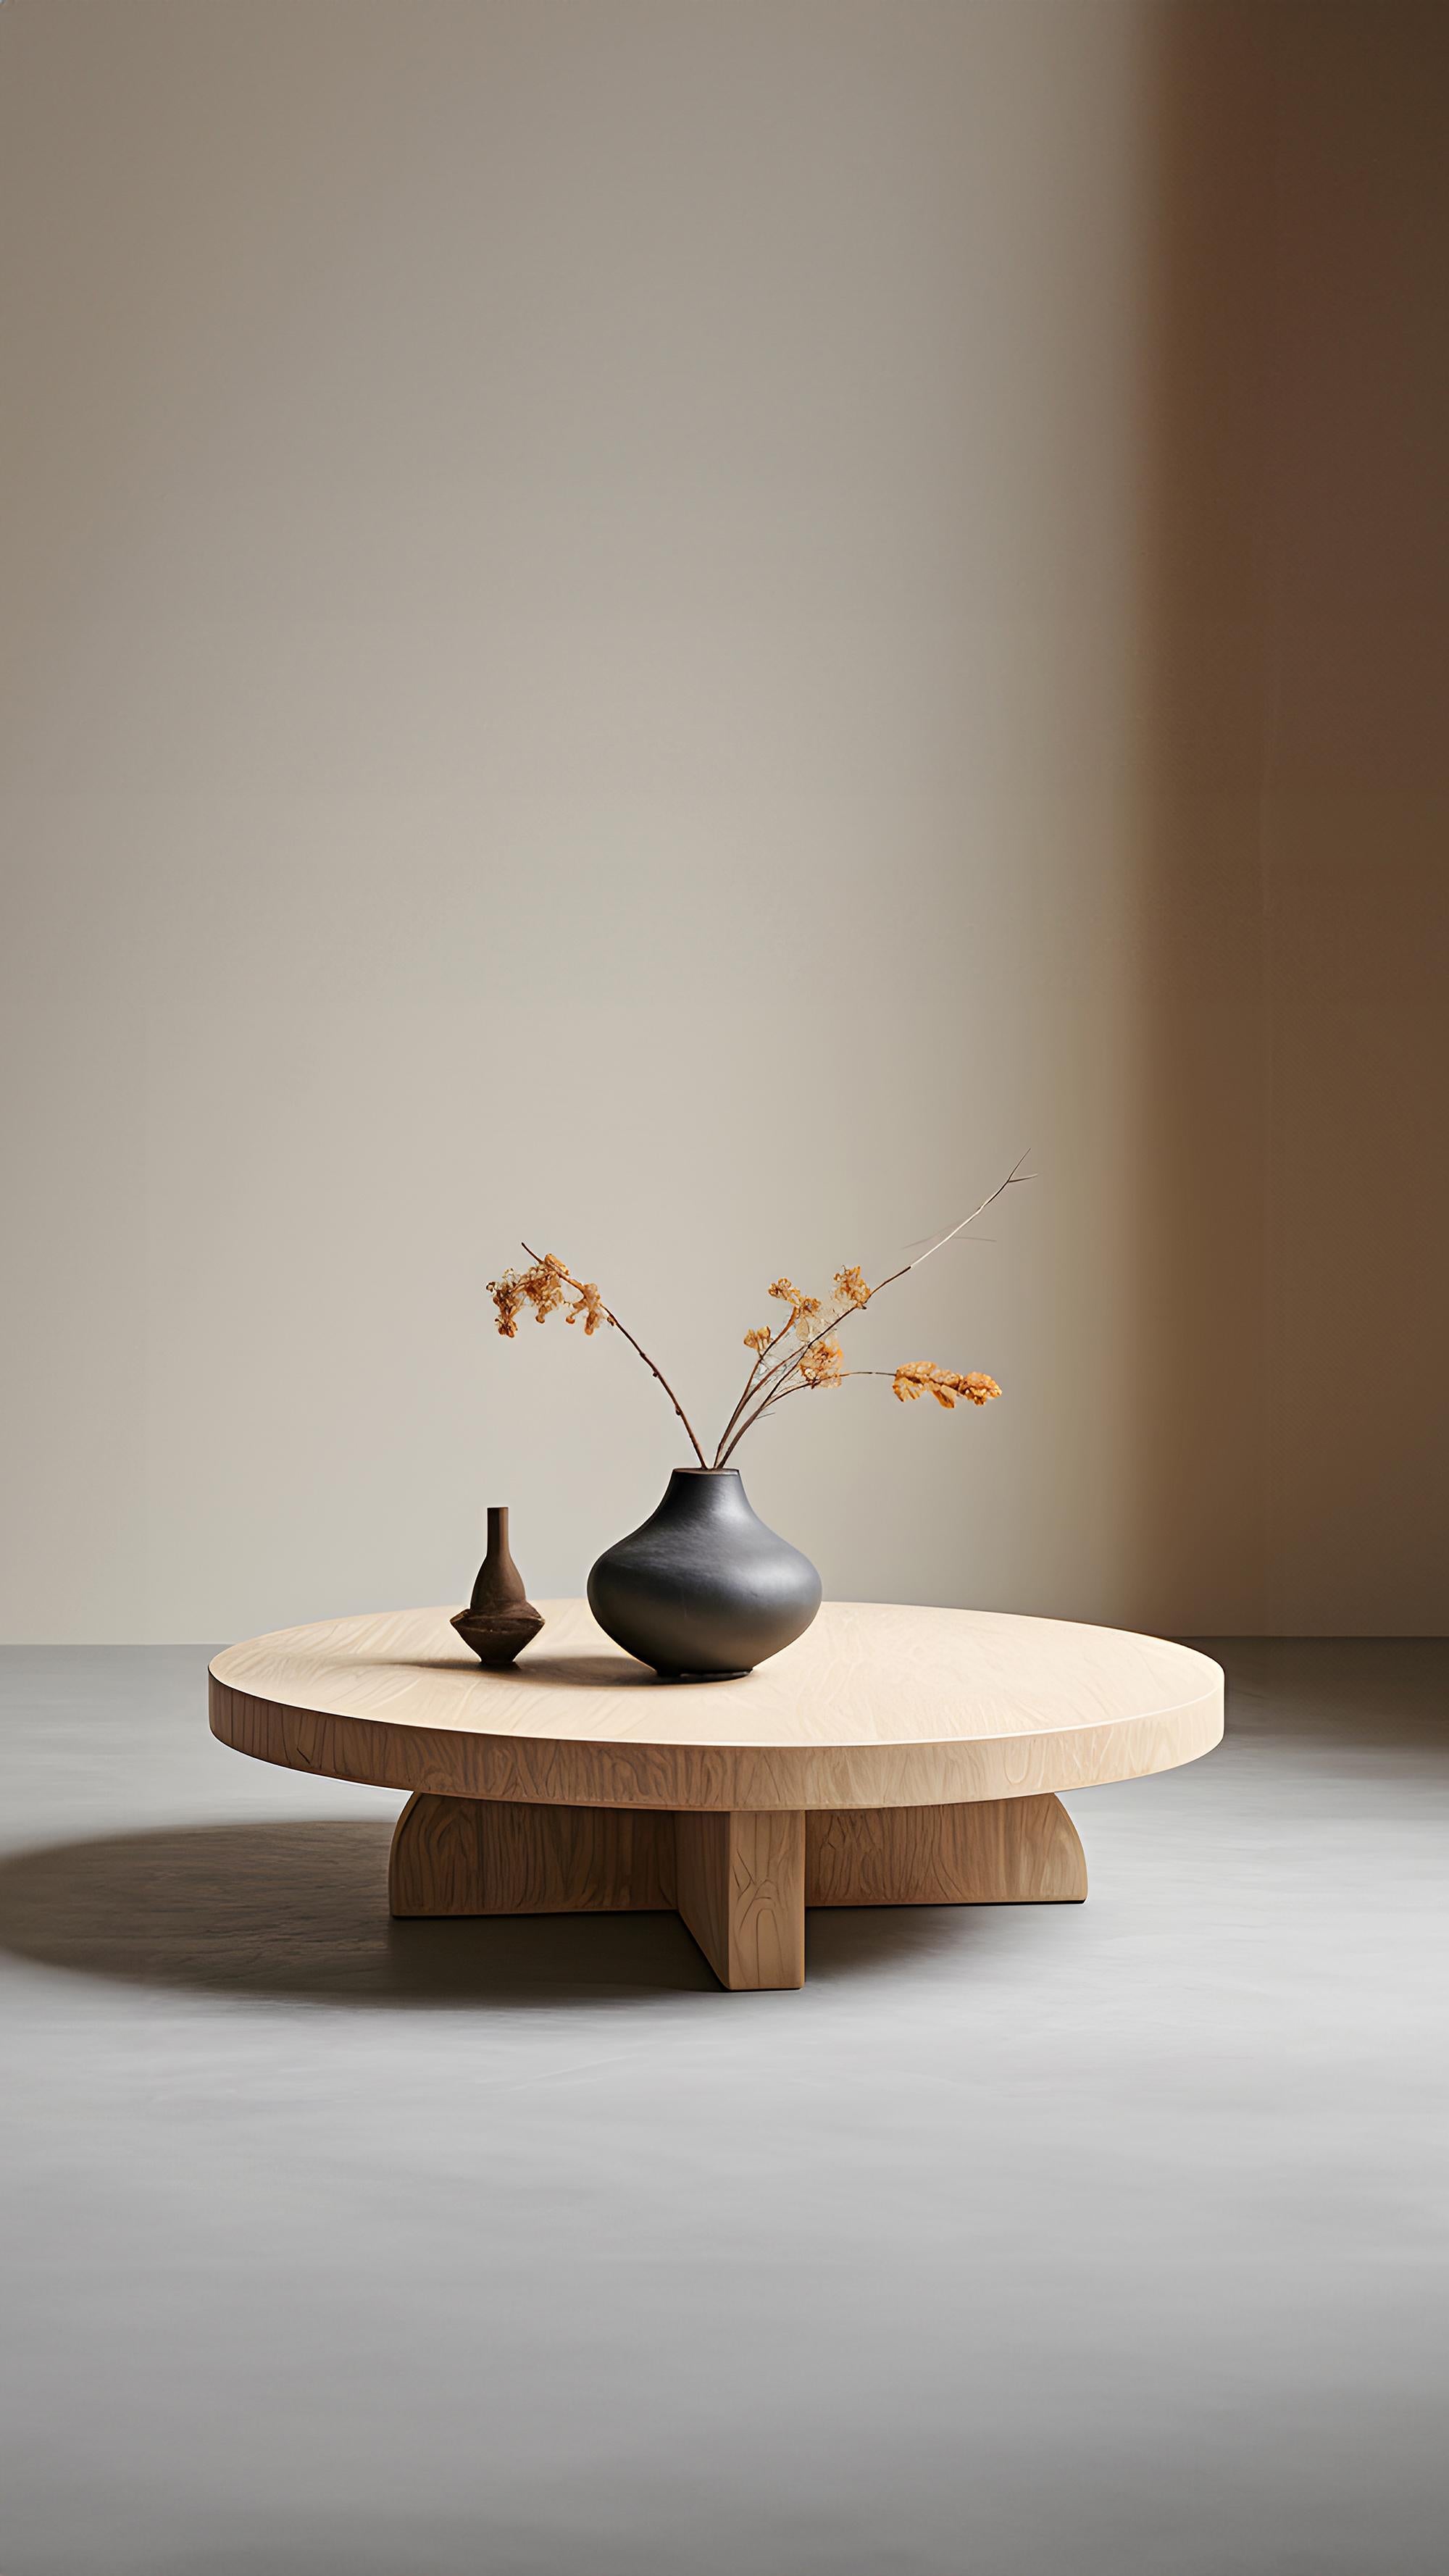 Black Fundamenta Abstract Table 57 Contemporary Oak Design by NONO For Sale 1